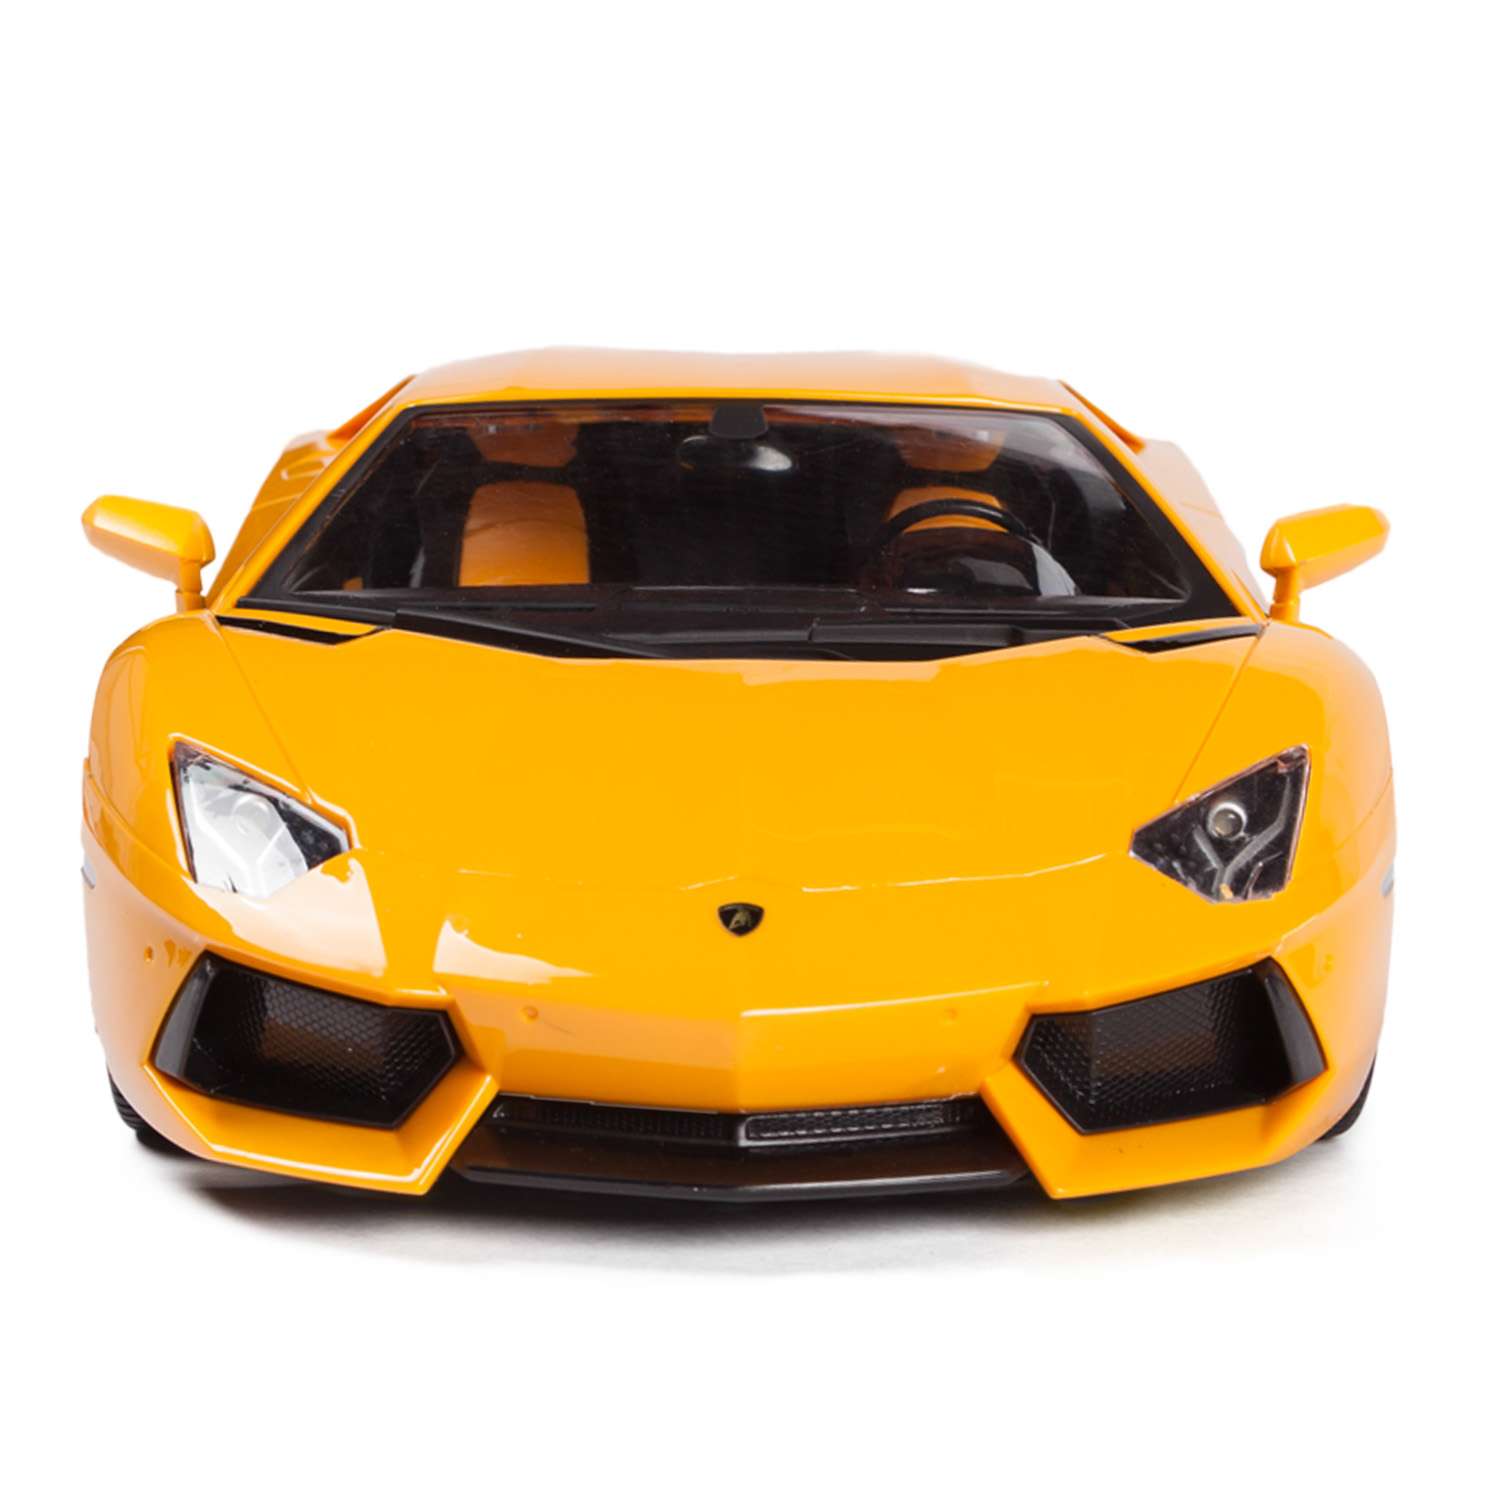 Машинка р/у Mobicaro Lamborghini LP700 1:14 желтая 34 см - фото 8